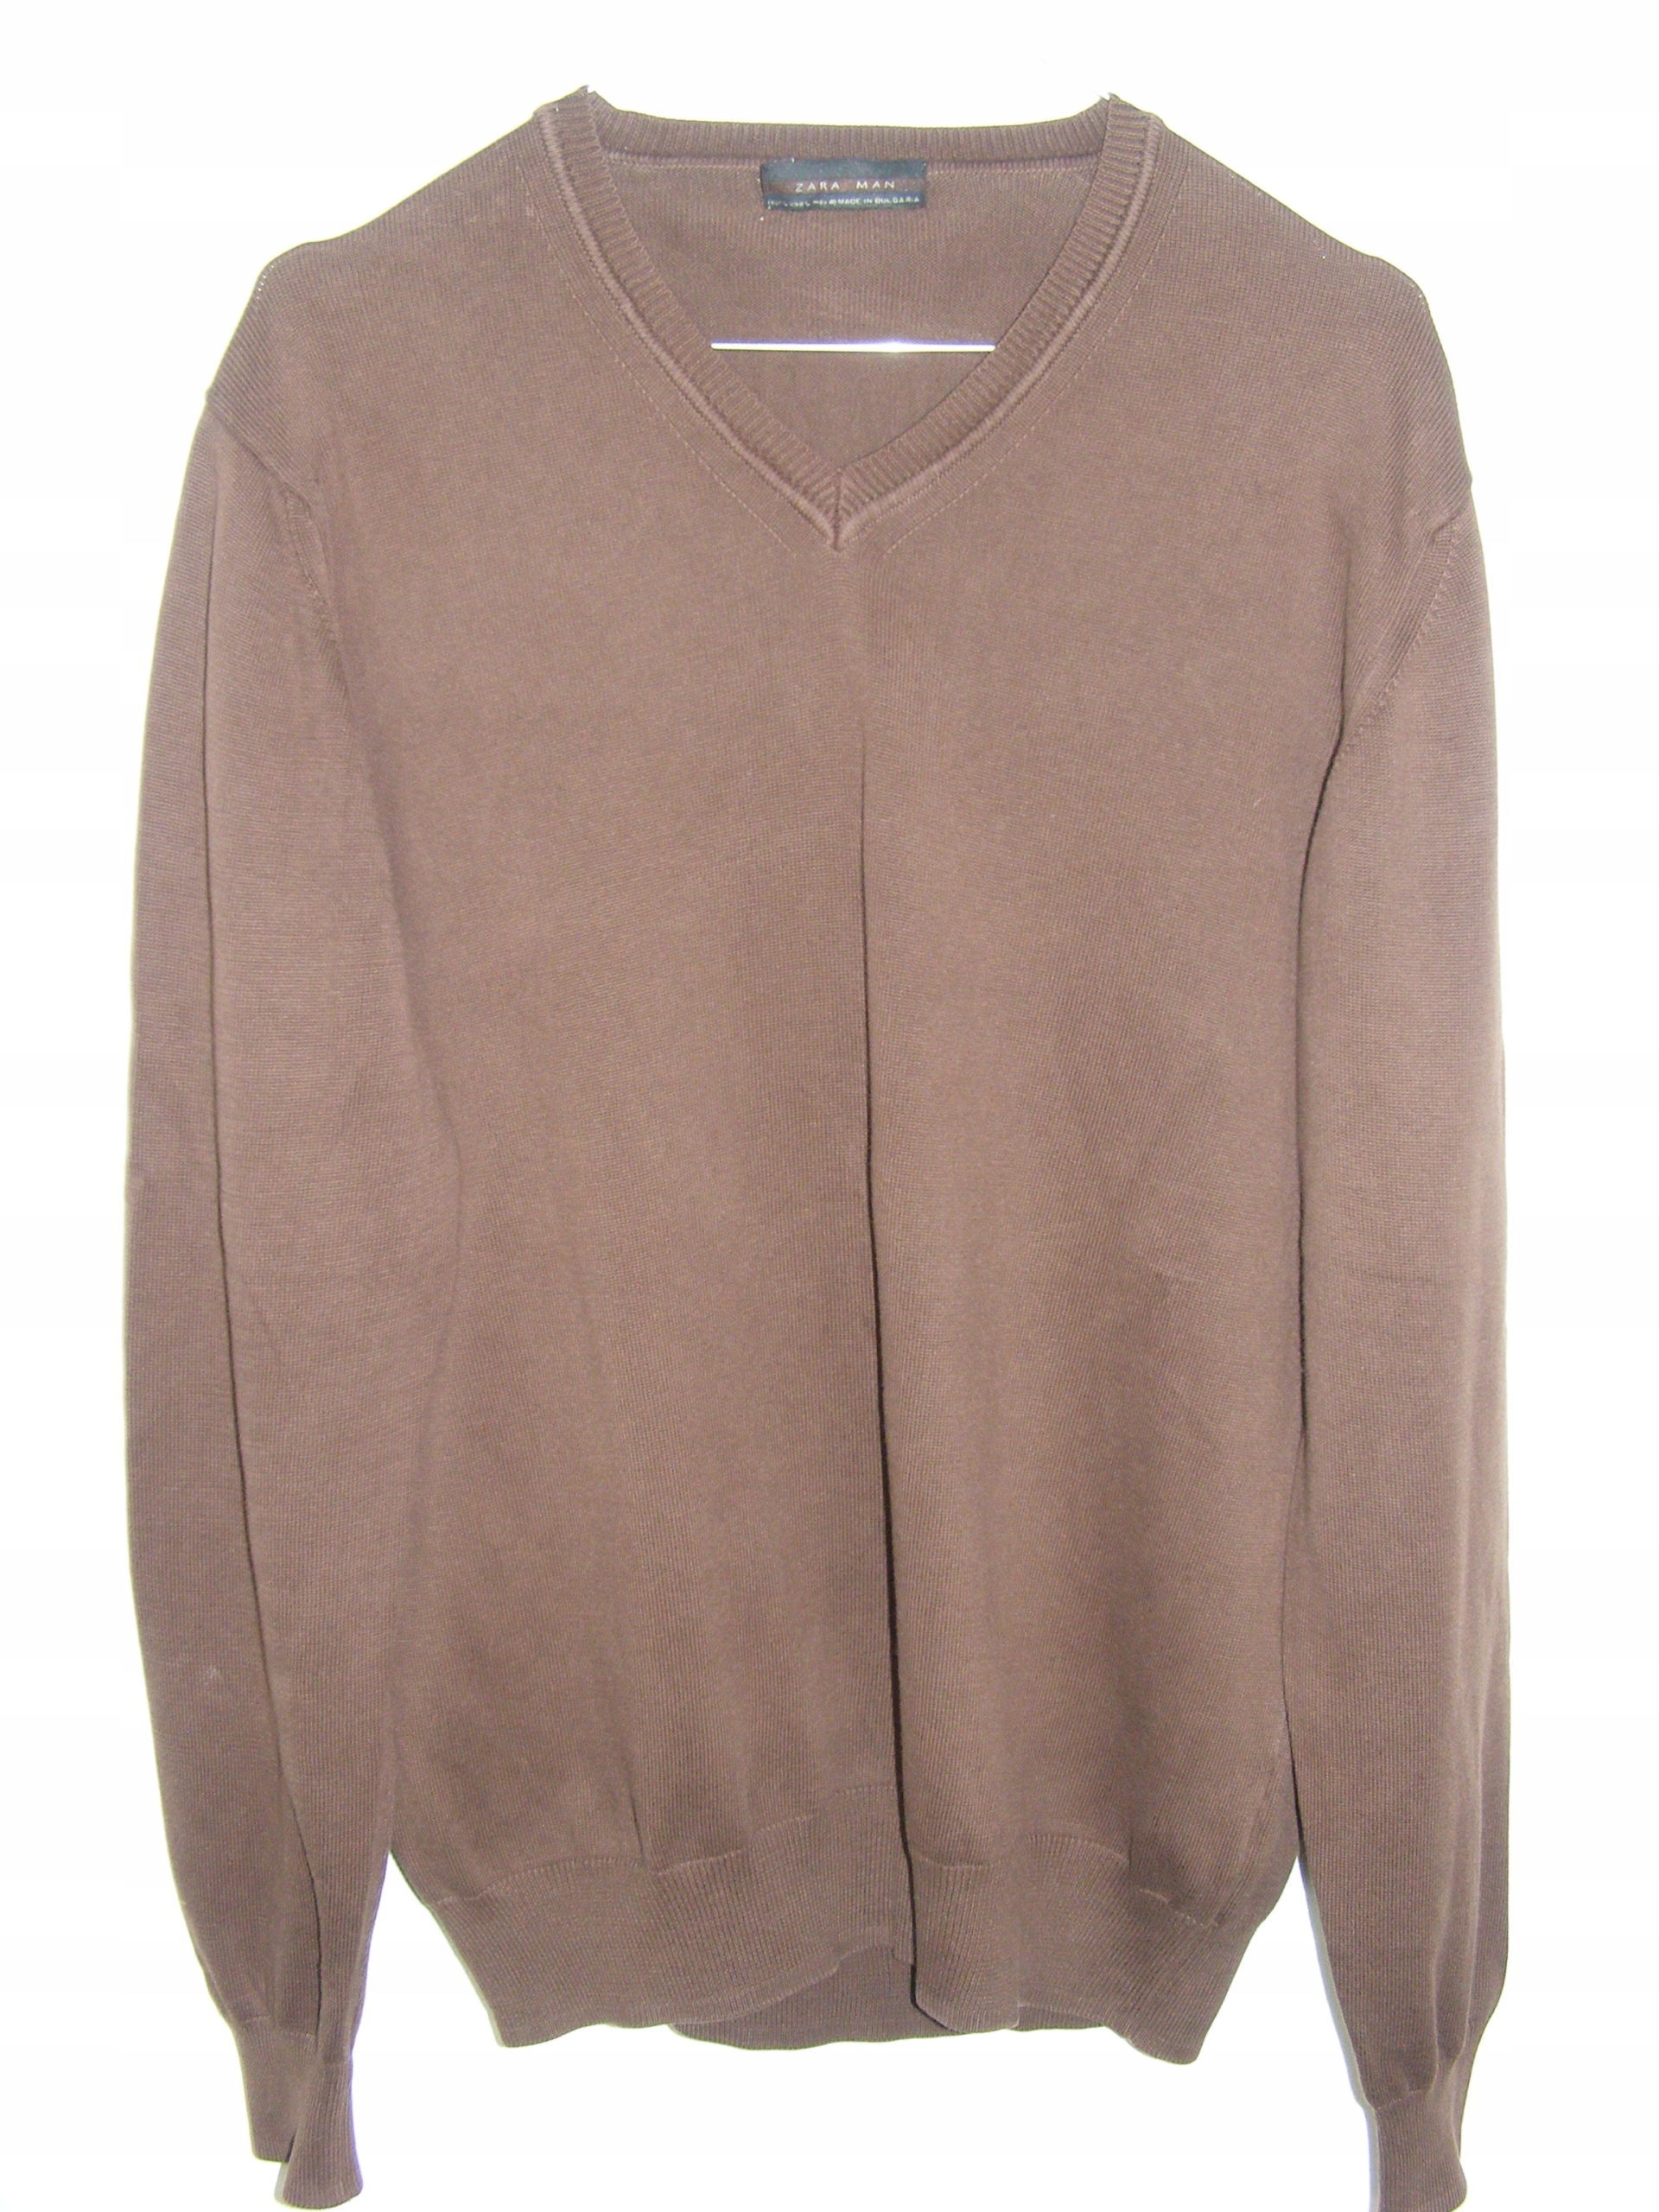 ZARA hnedý bavlnený sveter pulóver R L